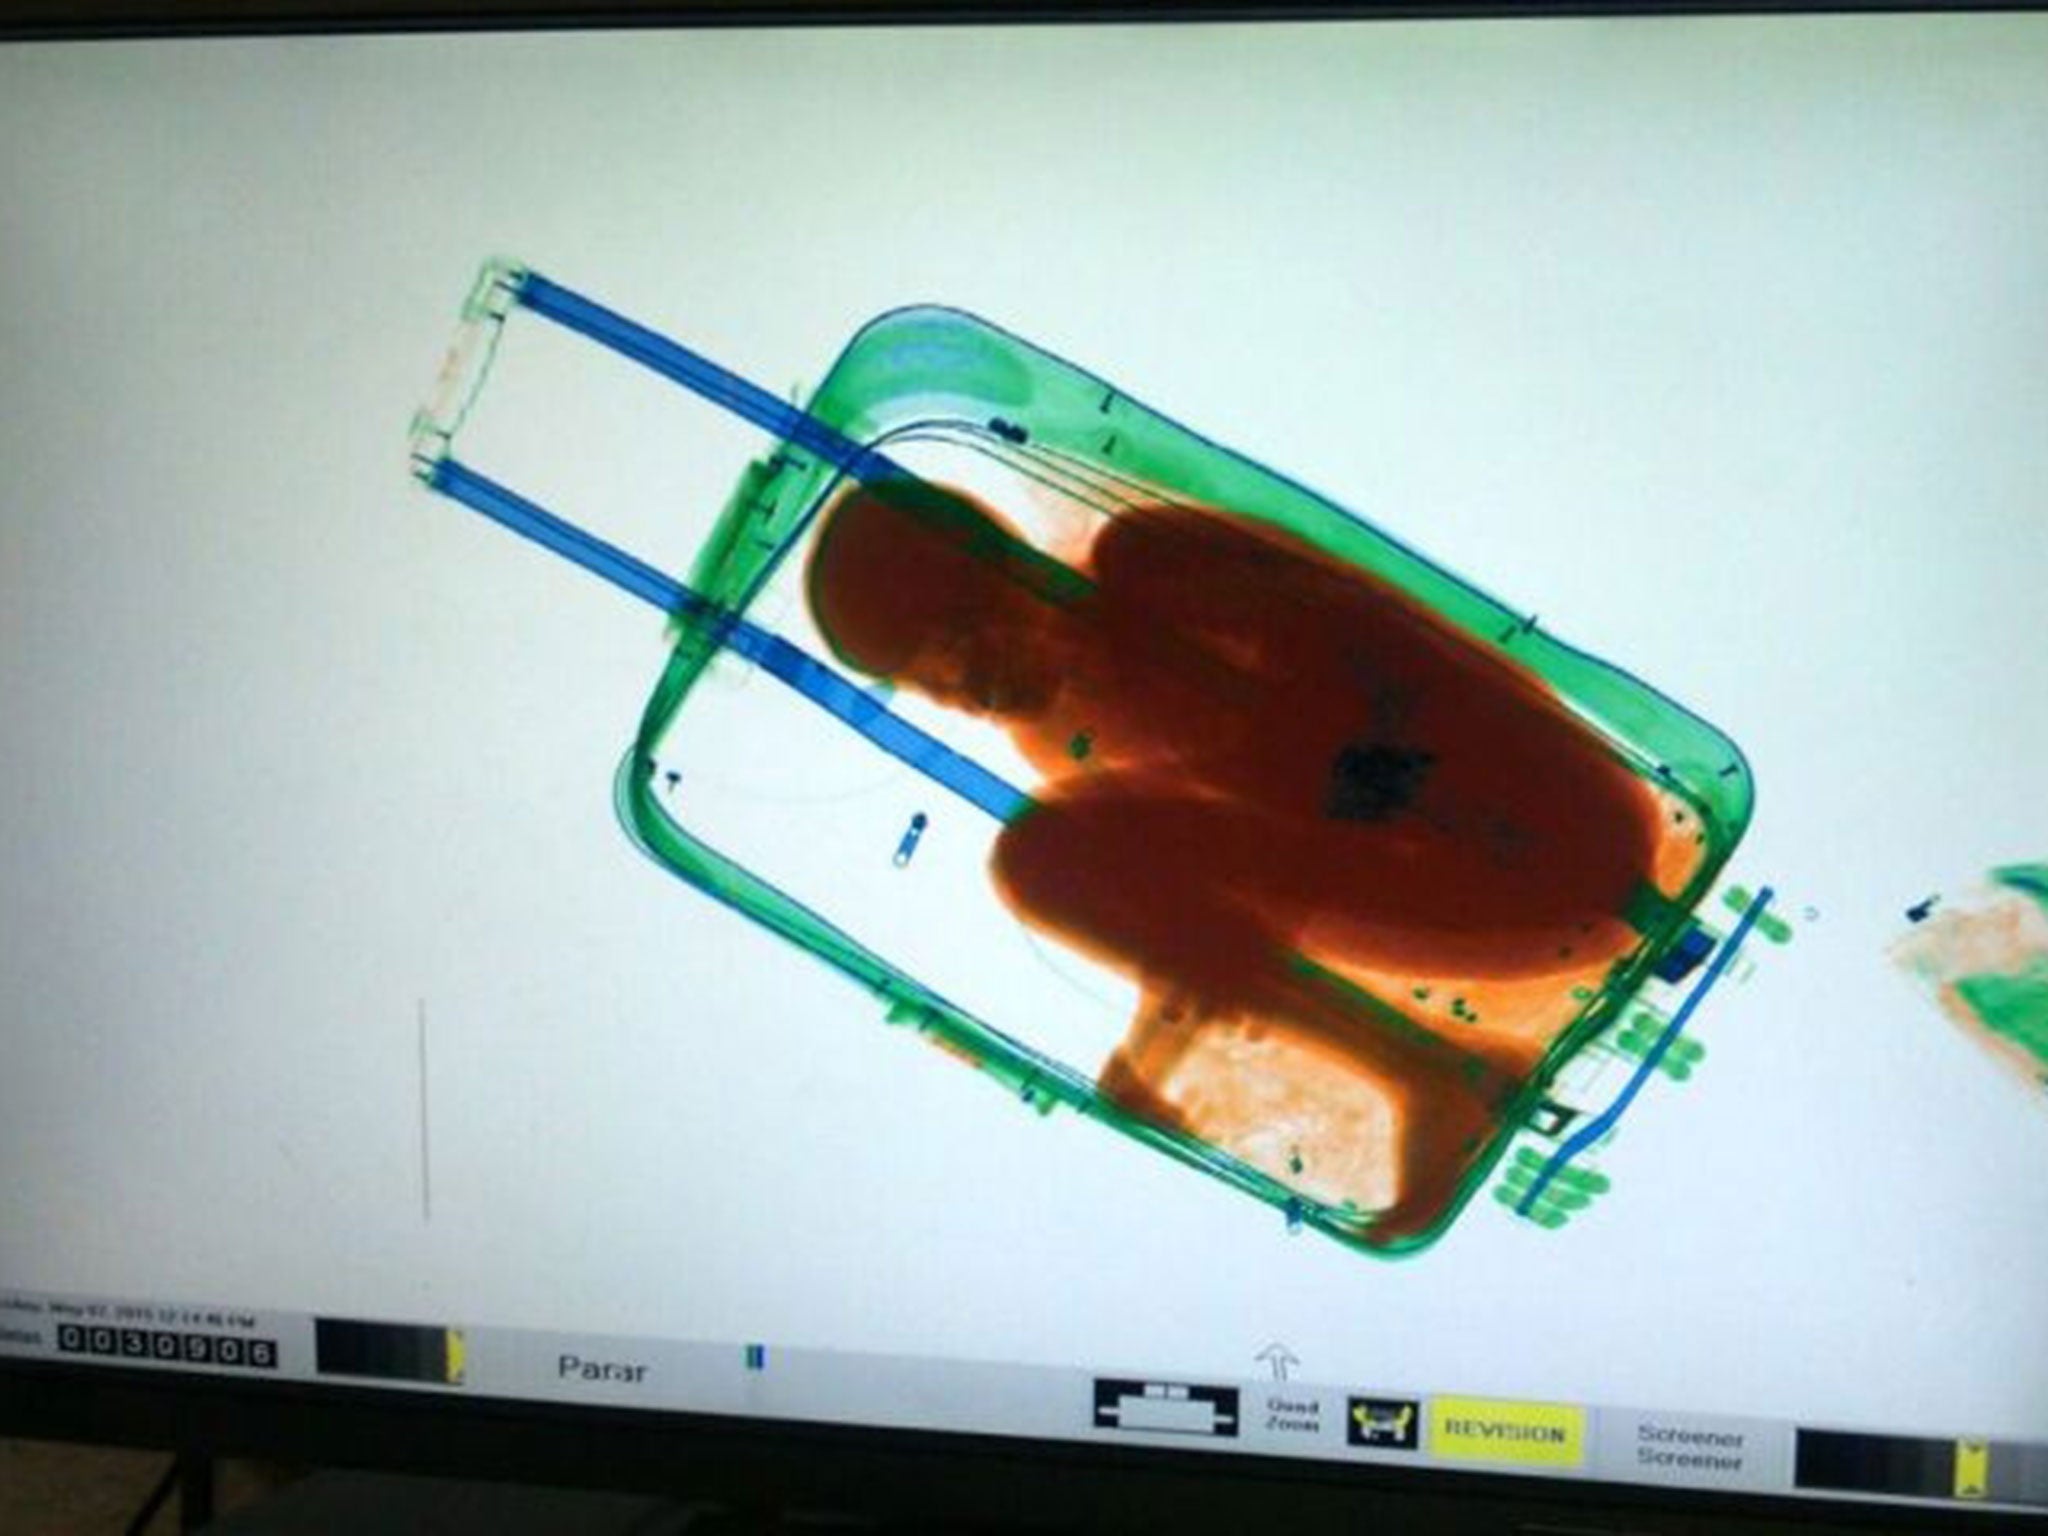 8-year-old Ivorian boy Adou Ouattara was found by airport staff hidden in a suitcase